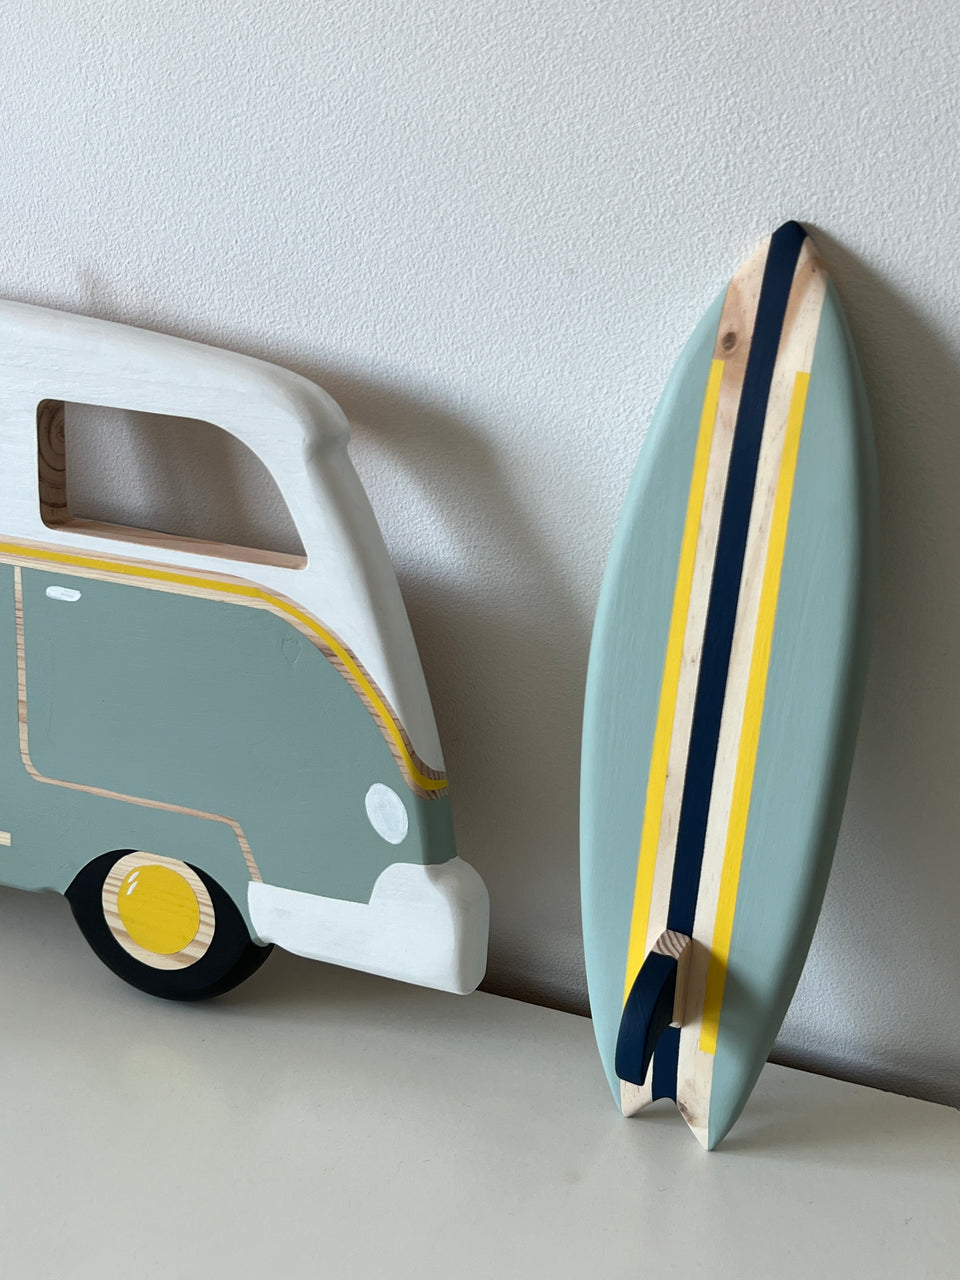 Candeeiro Van Surf  de parede Trend - Trend Van Surf wall lamp light